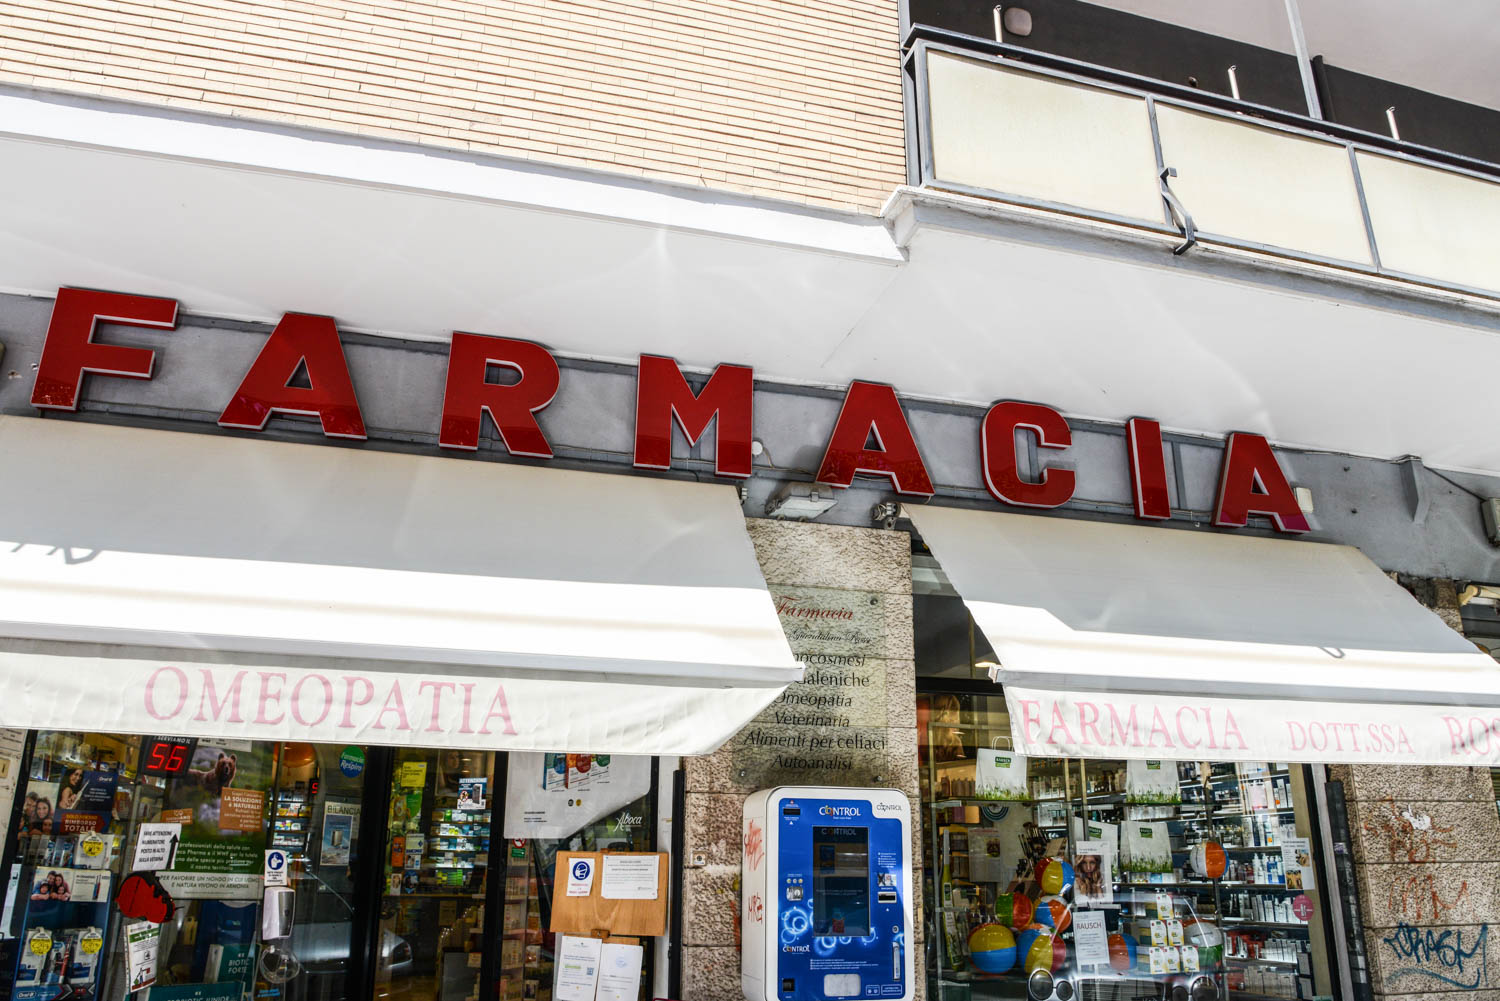 Farmacia Roma Tuscolana